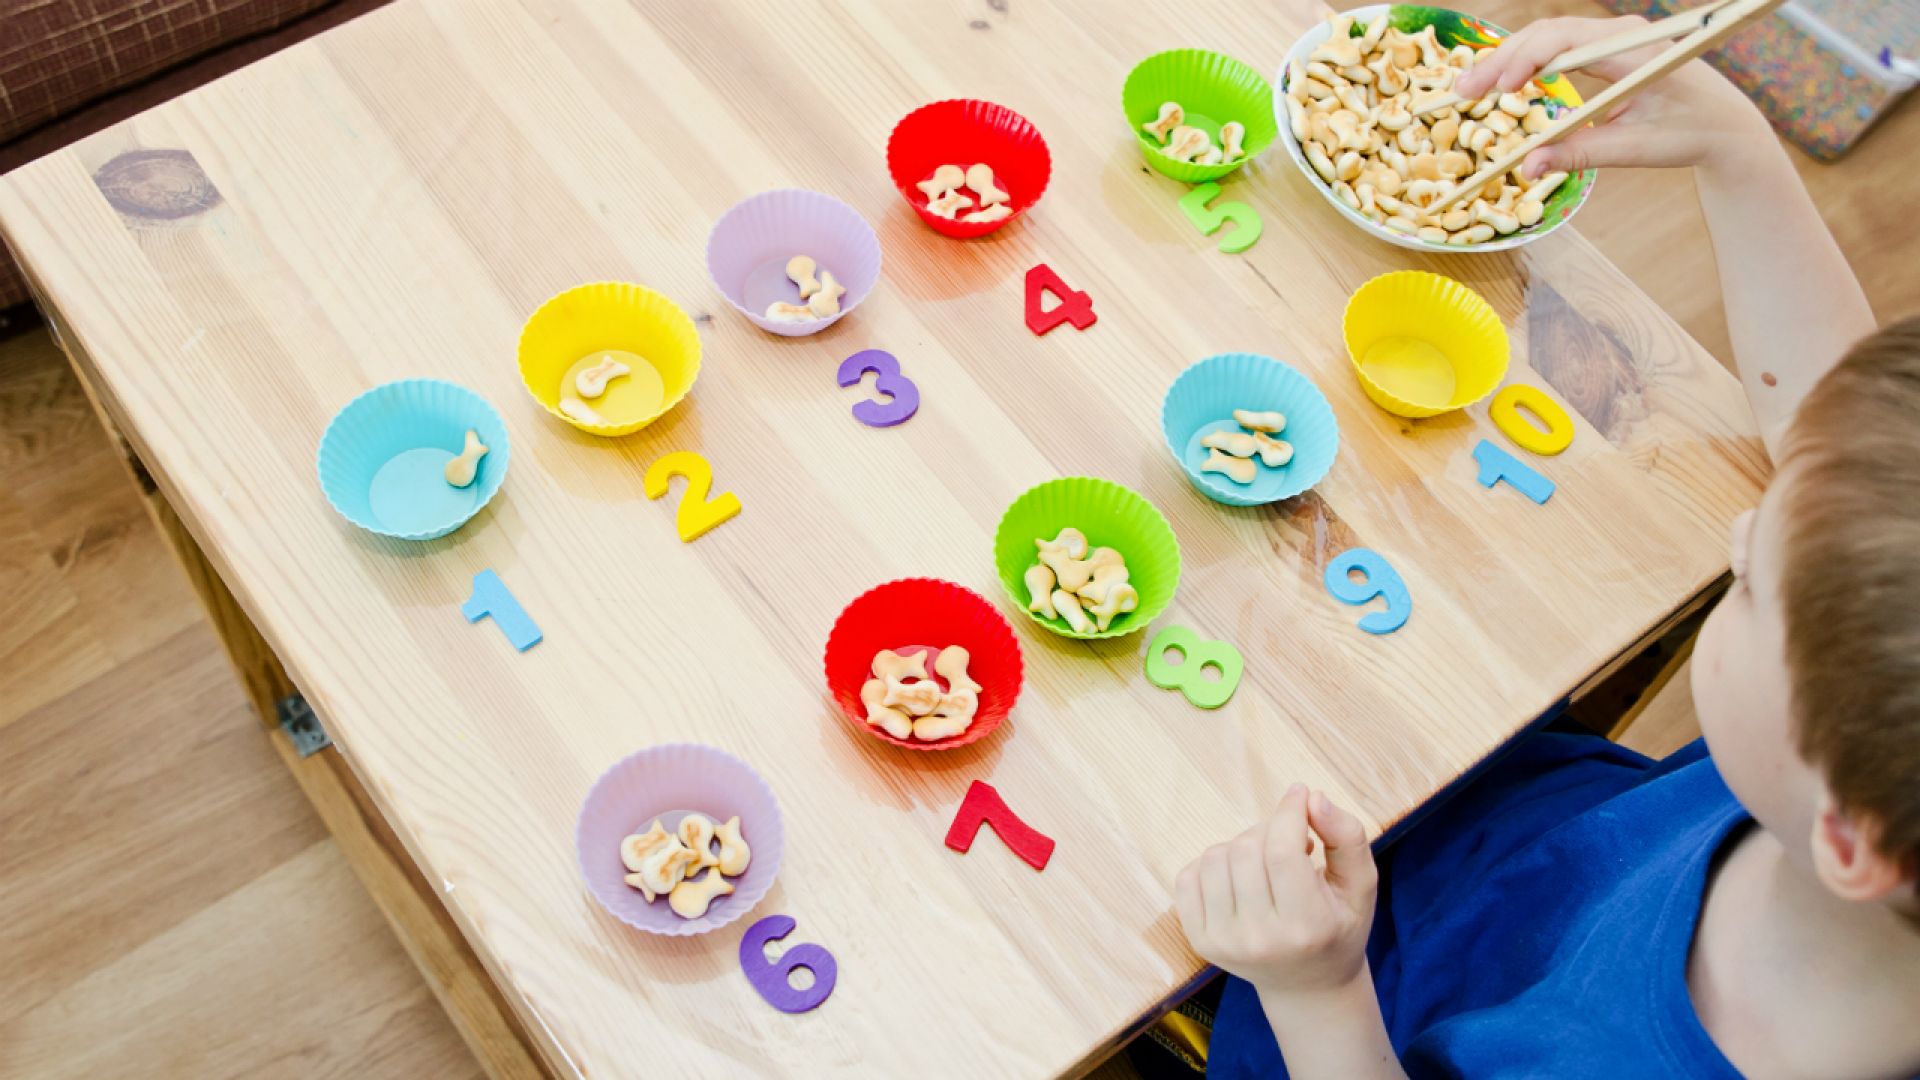 Веселые игры простое. Развивашки для детей 2-3 года Монтессори. Igri Montessori для детей 3 года. Игры Монтессори для детей 3-4 лет. Игры по методике Монтессори для детей 2-3 лет.